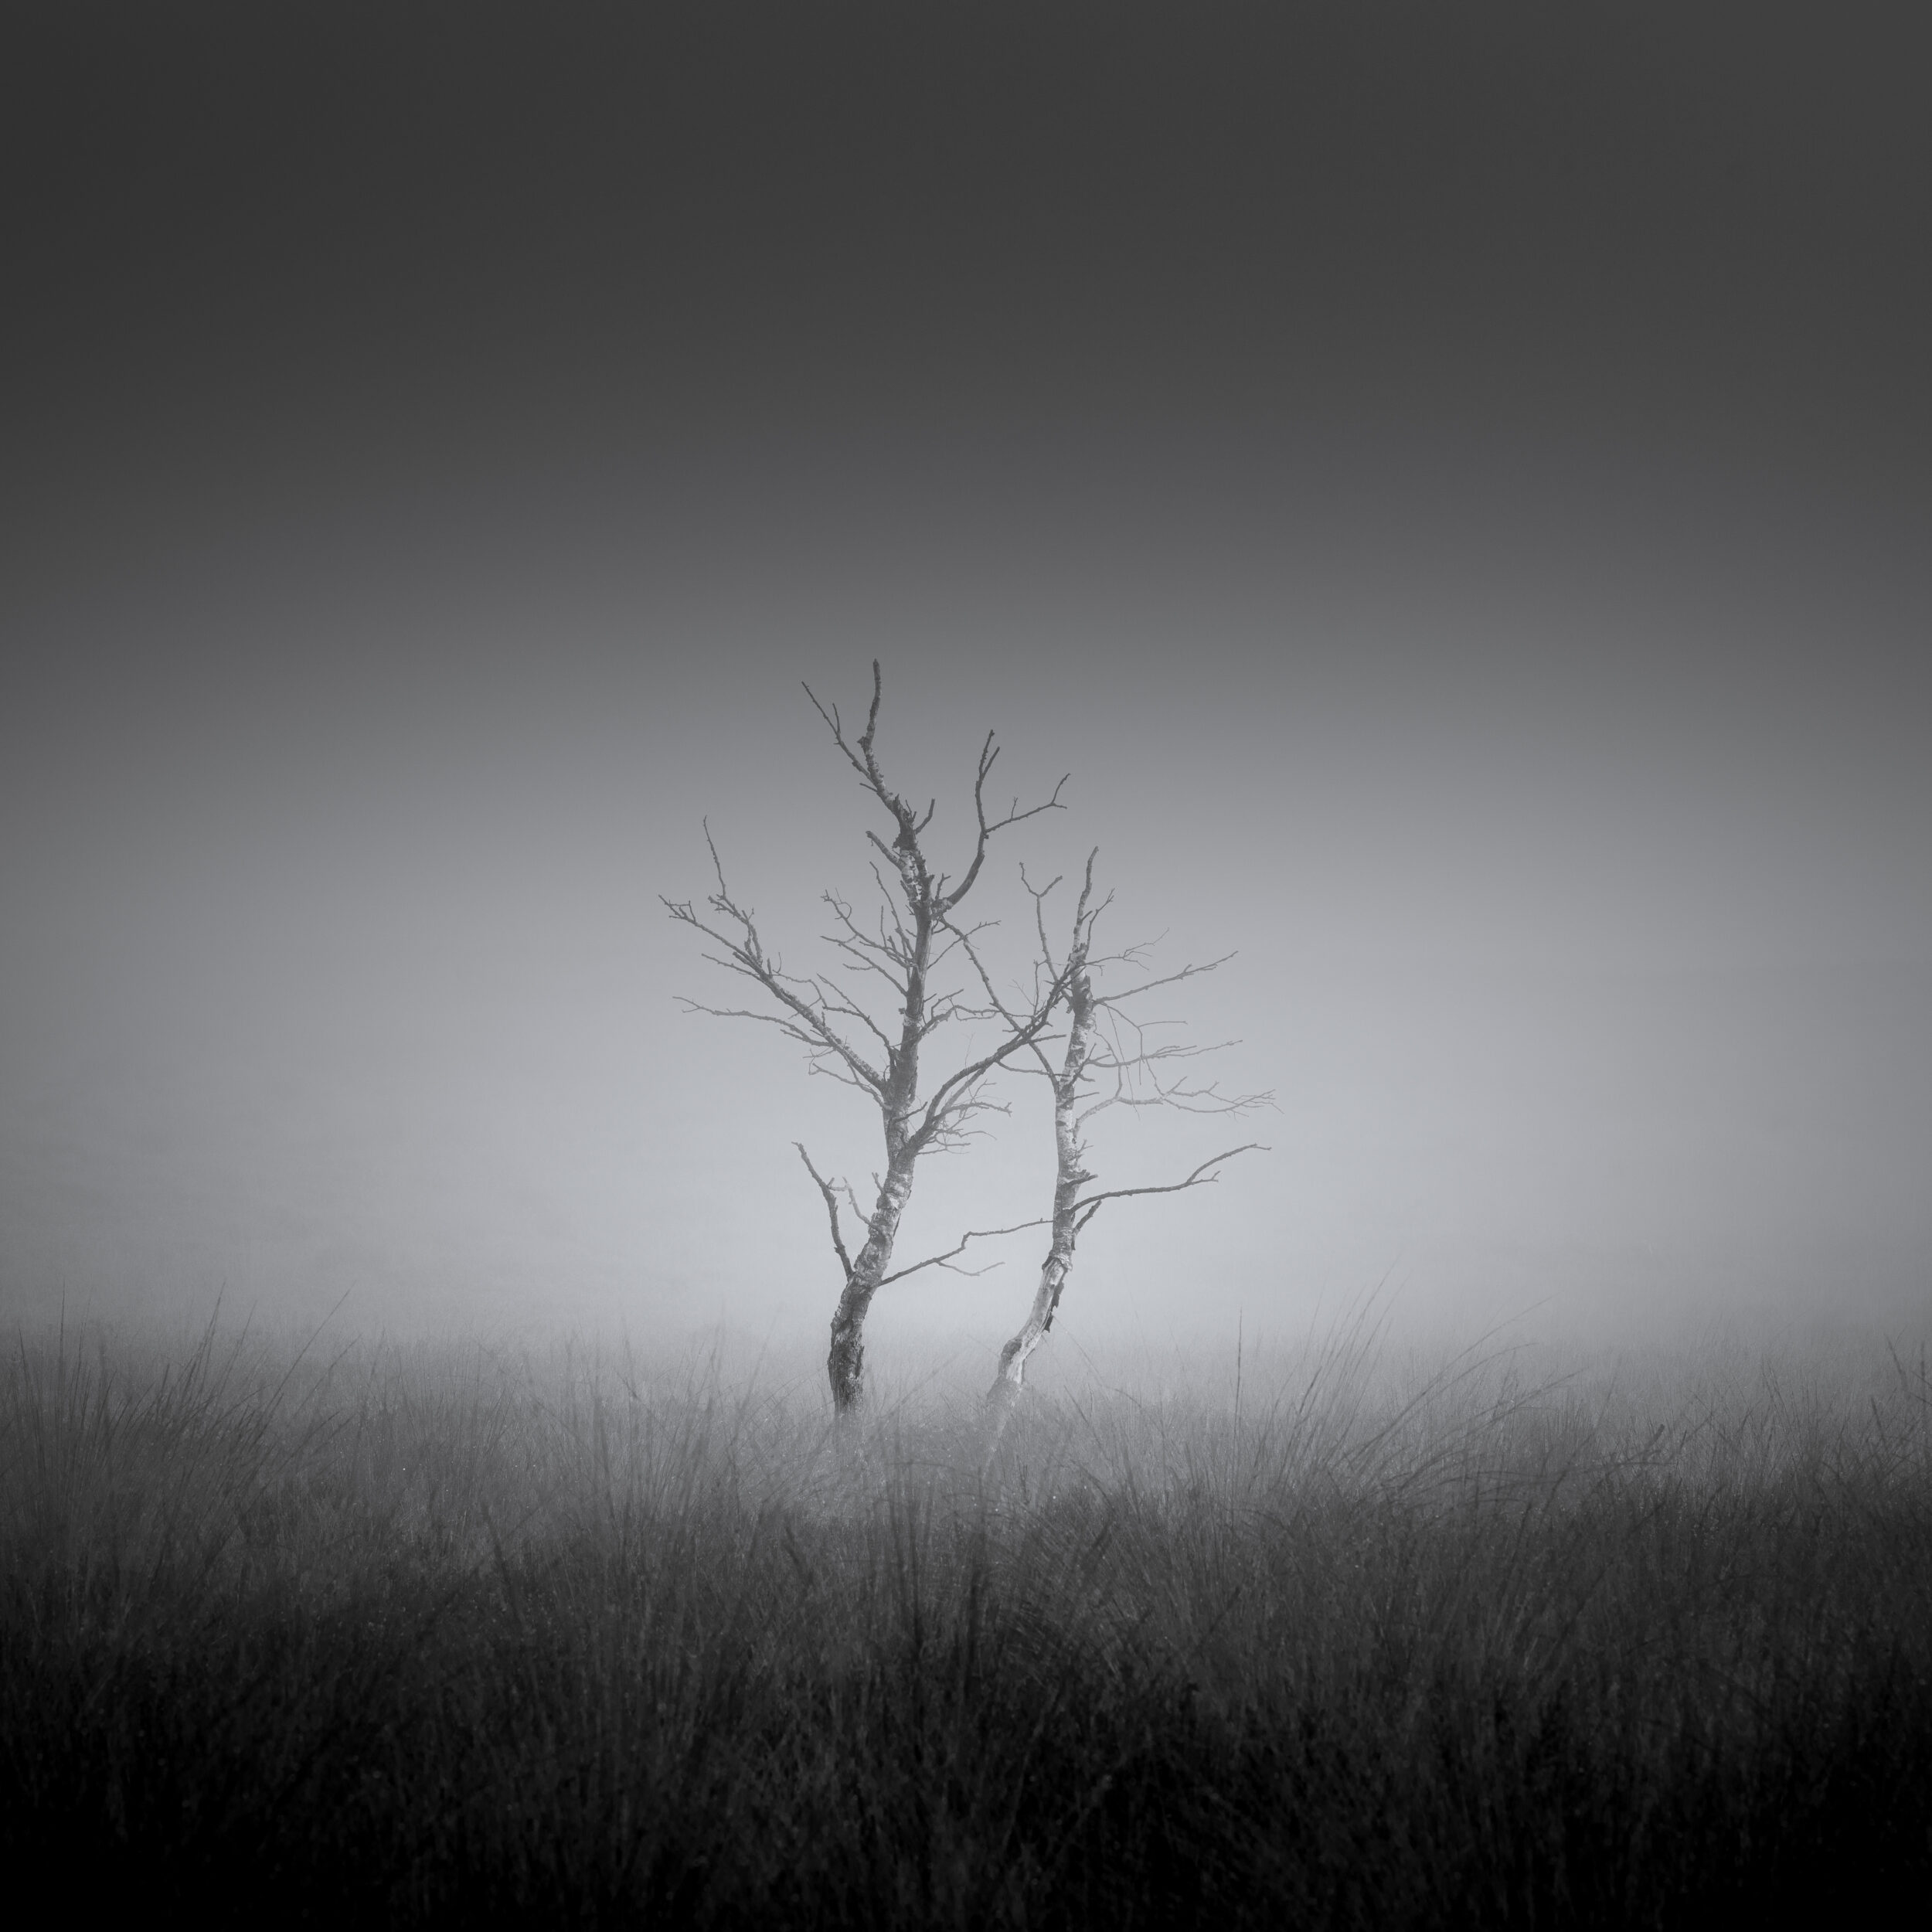 Twin trees in a foggy heath